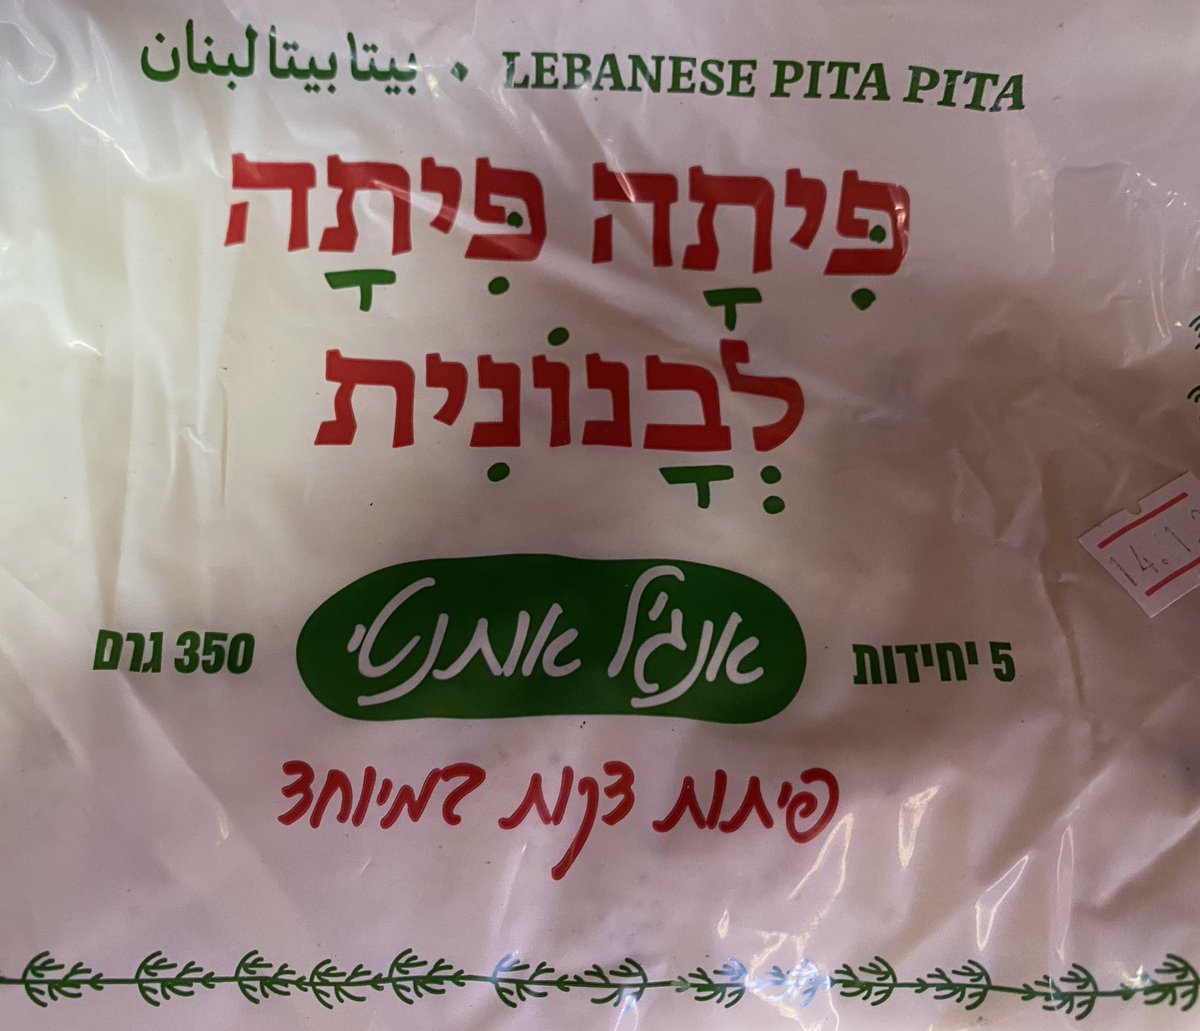 تجد انواع الخبز في إسرائيل وكلها مرغوبة! في الصورة خبز بيتا لبناني من انتاج مخبز اسرائيلي